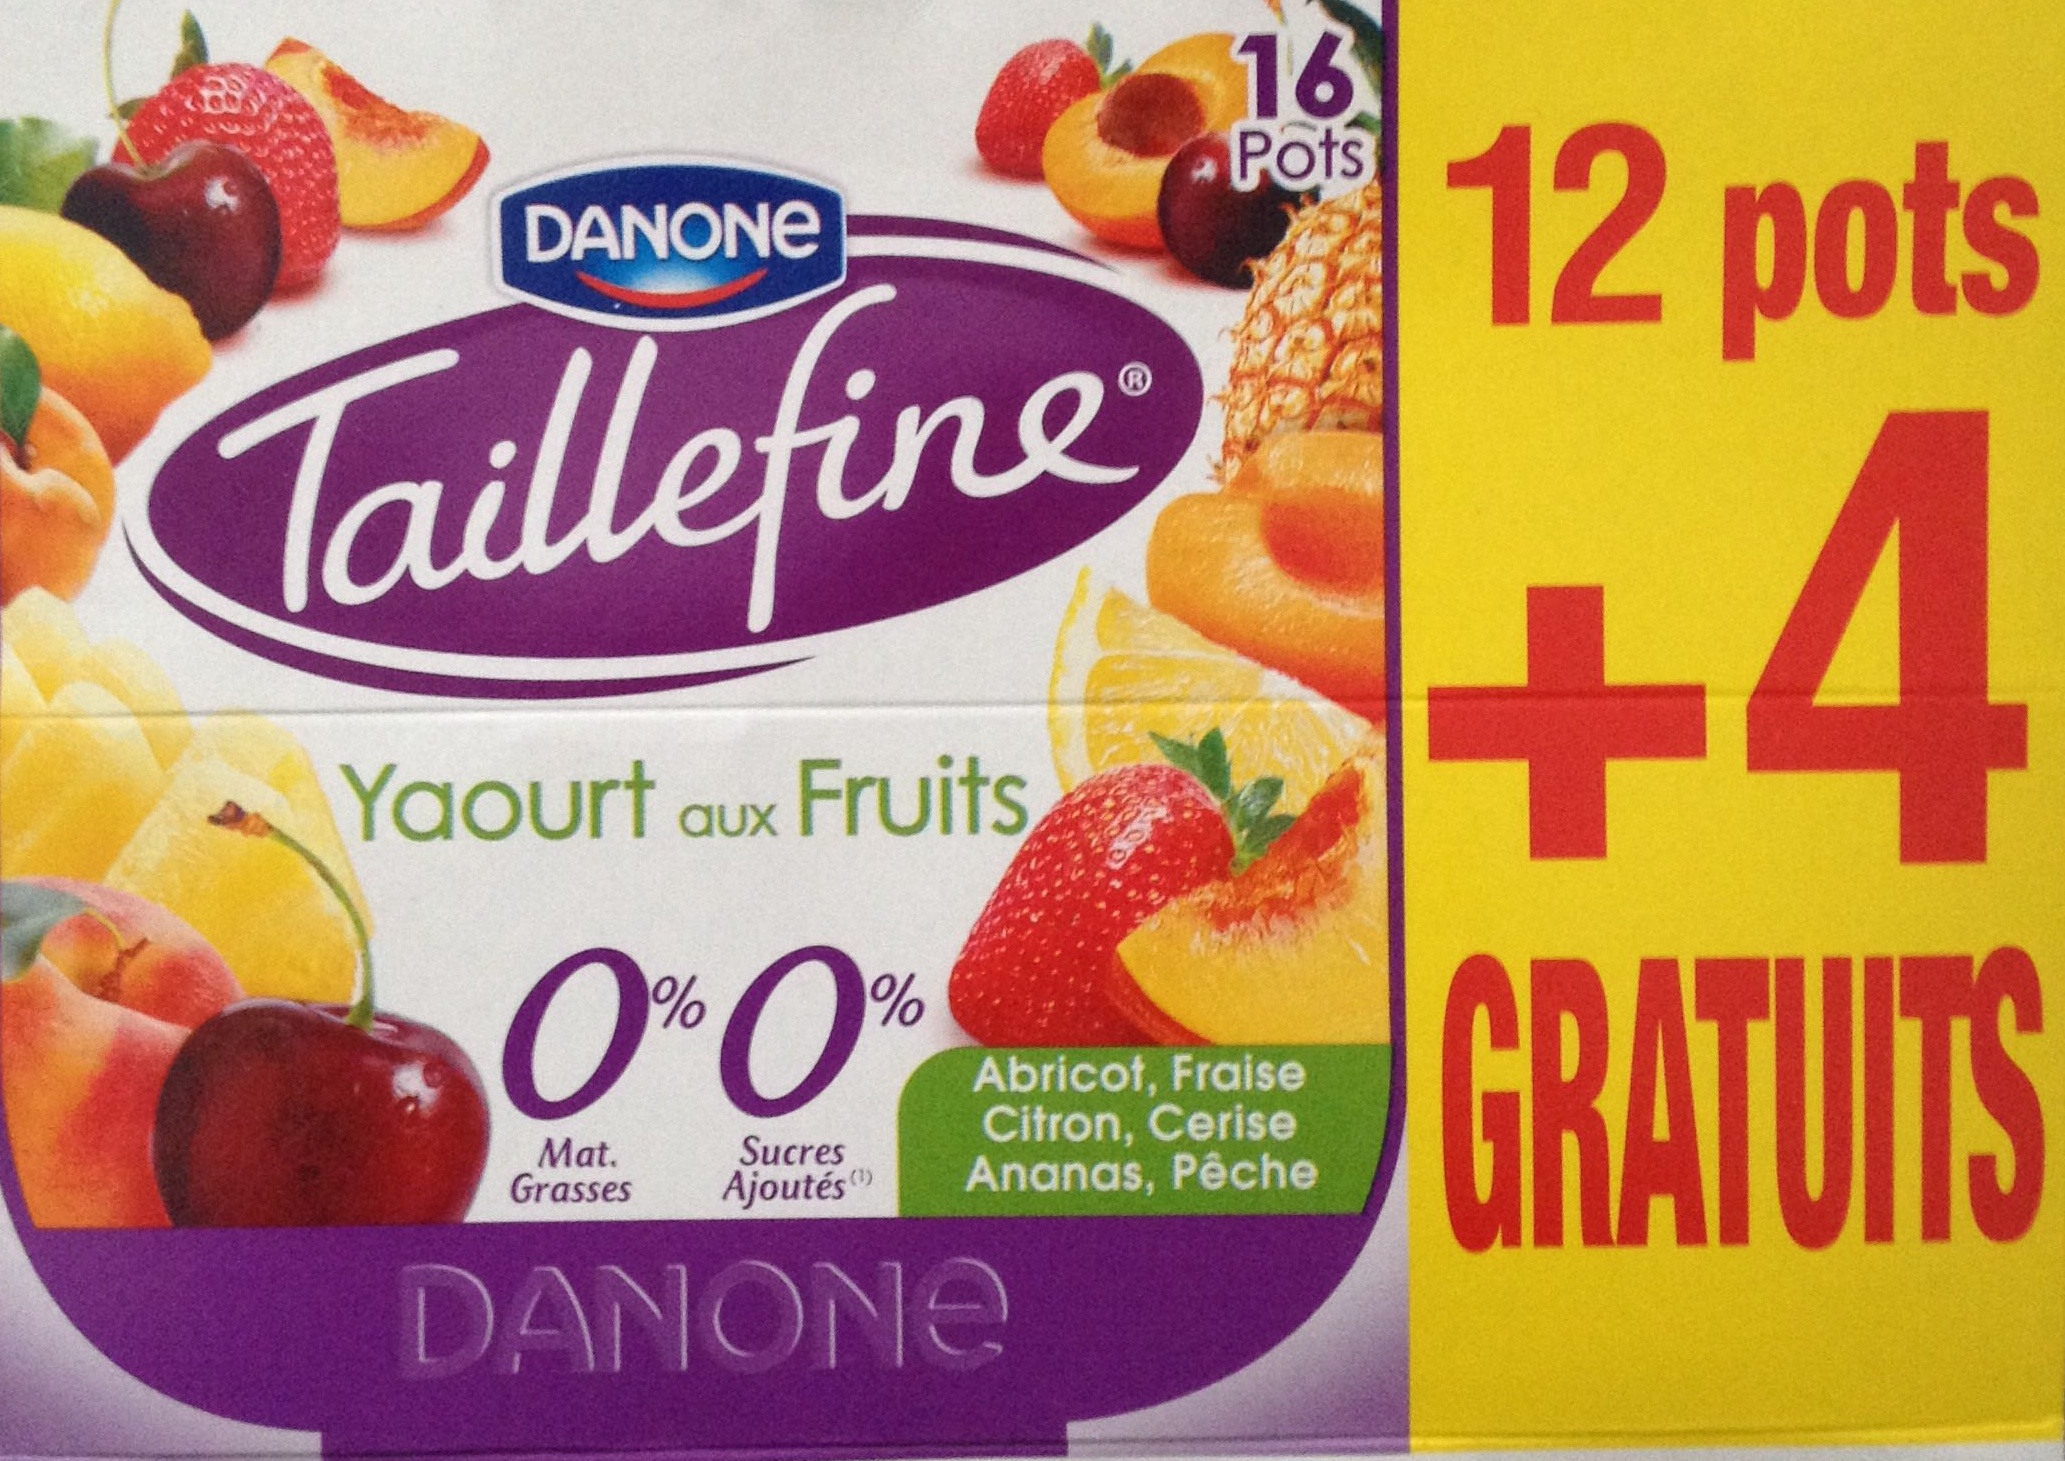 Taillefine, Yaourt au Fruits (0 % MG, 0 % Sucres Ajoutés) - (Abricot, Fraise, Citron, Cerise, Ananas, Pêche) 12 Pots   4 Gratuits - Produit